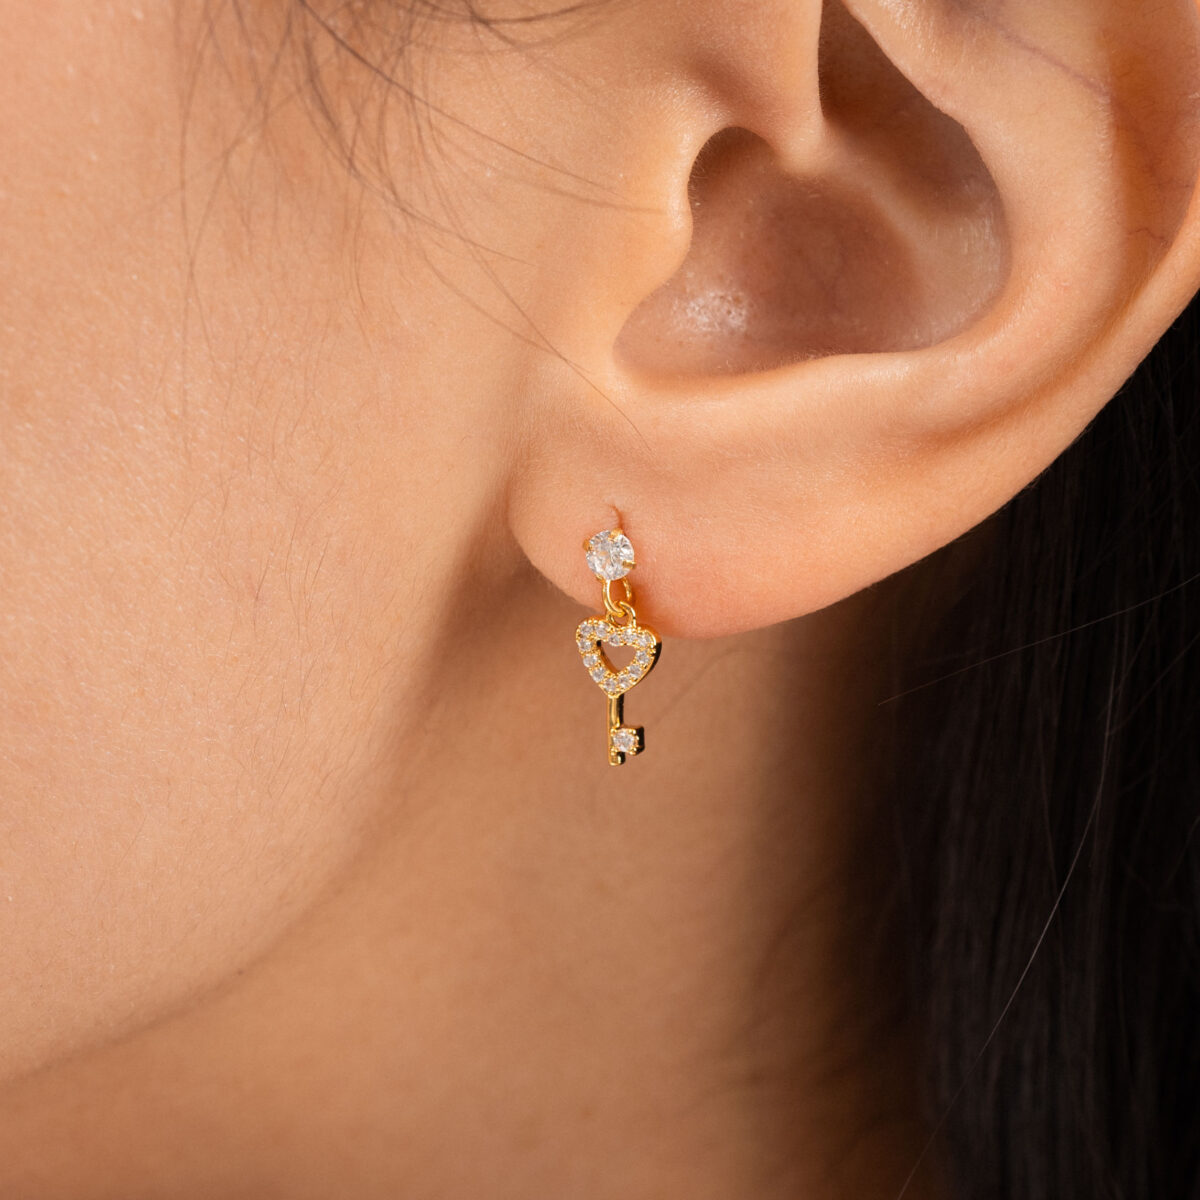 https://m.clubbella.co/product/alicia-earrings-24k-gold-plated/ HEART KEY EARRINGS (4)